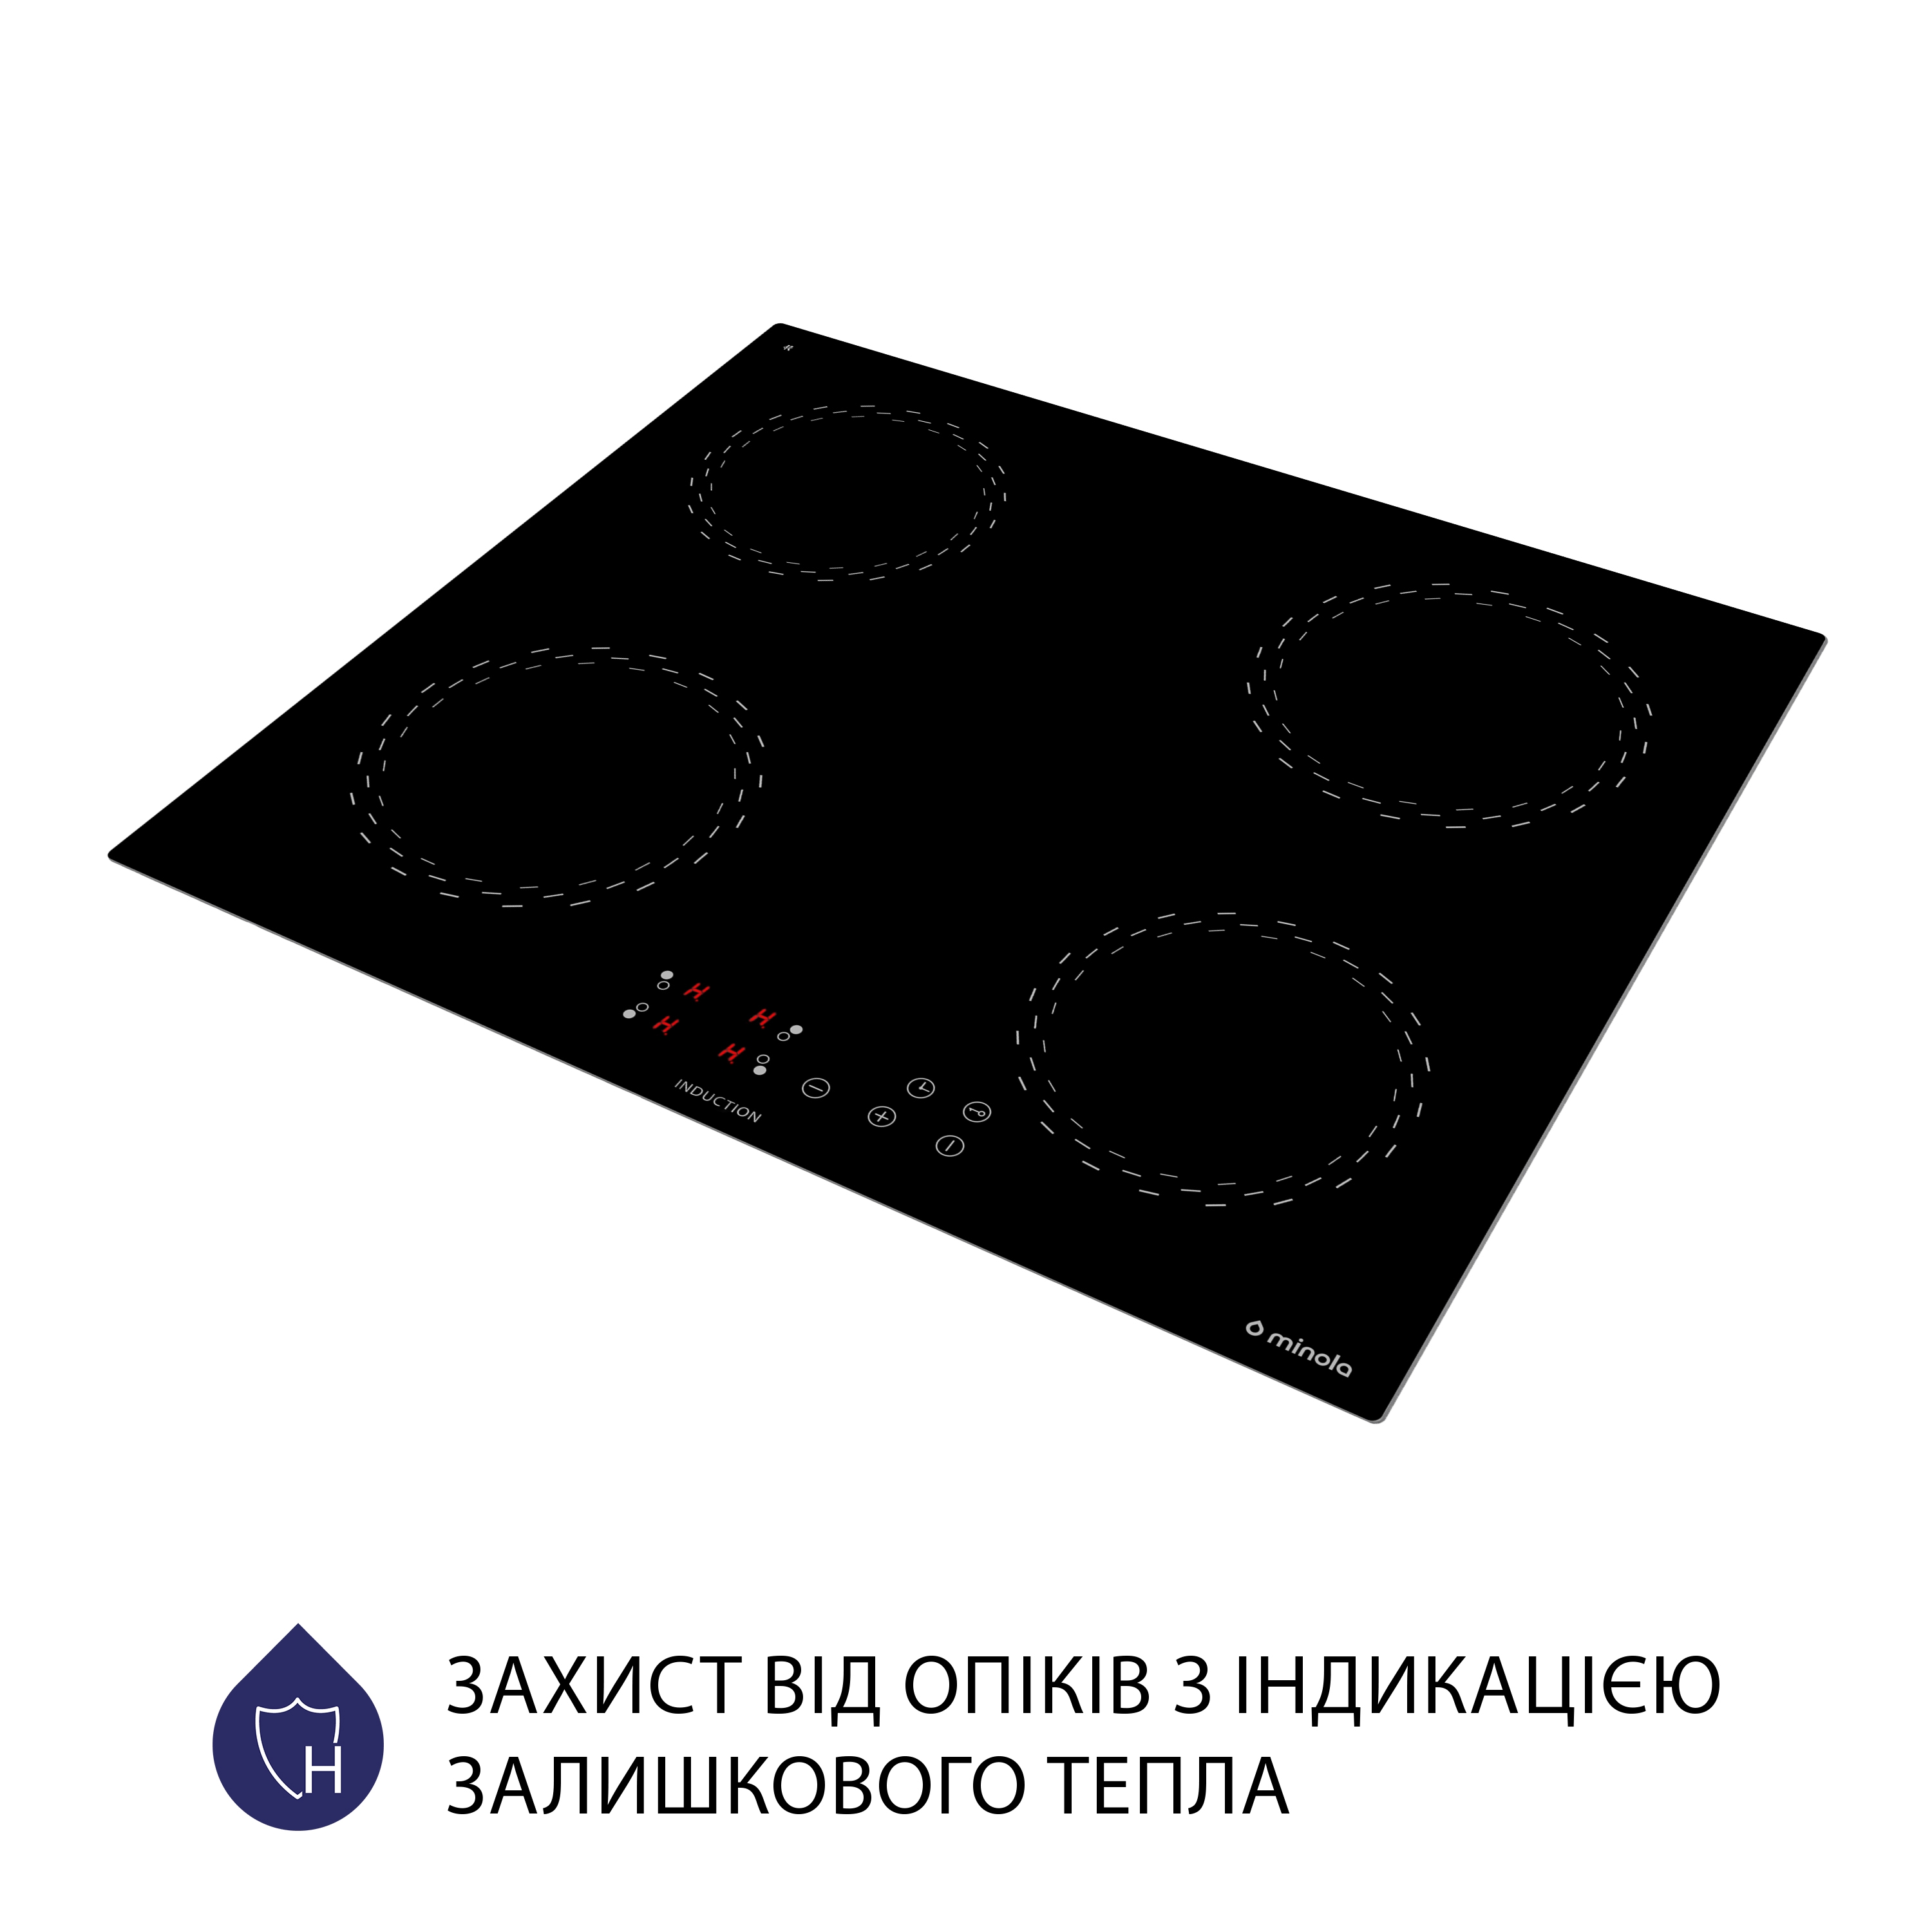 Индукционная варочная поверхность Minola MI 6038 KBL отзывы - изображения 5